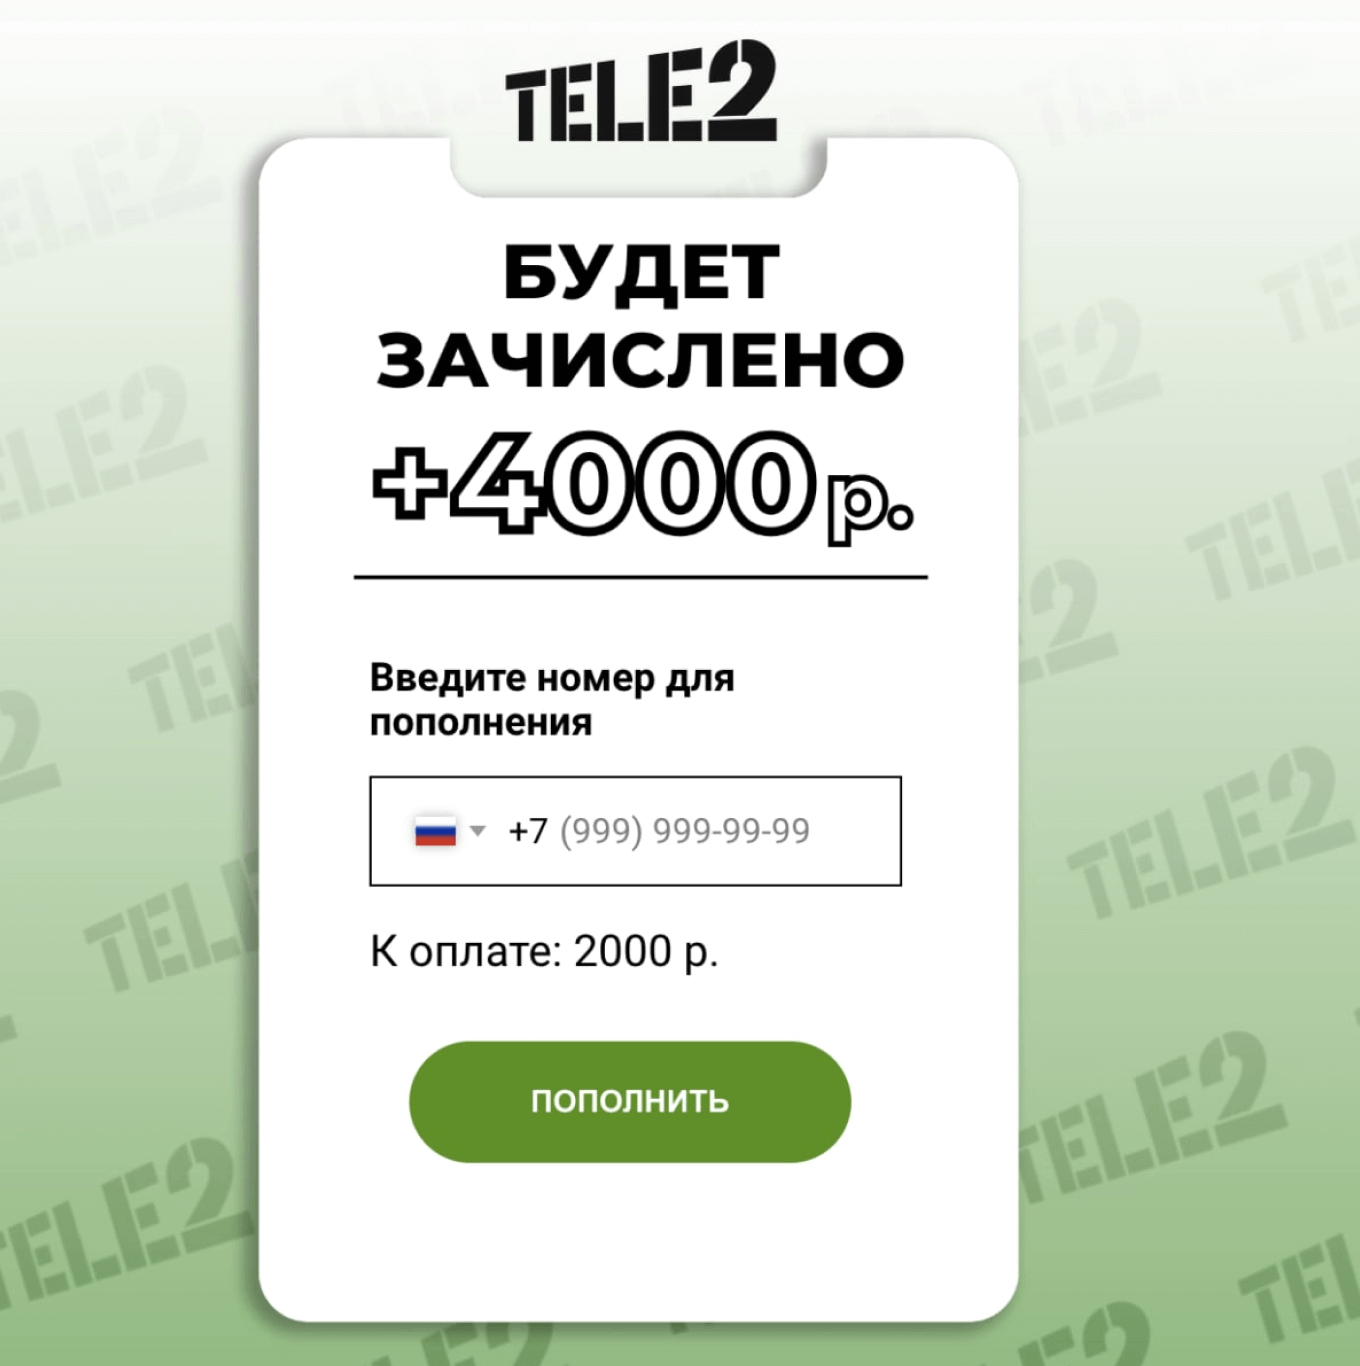 Фишинг-атака пользователей Tele2